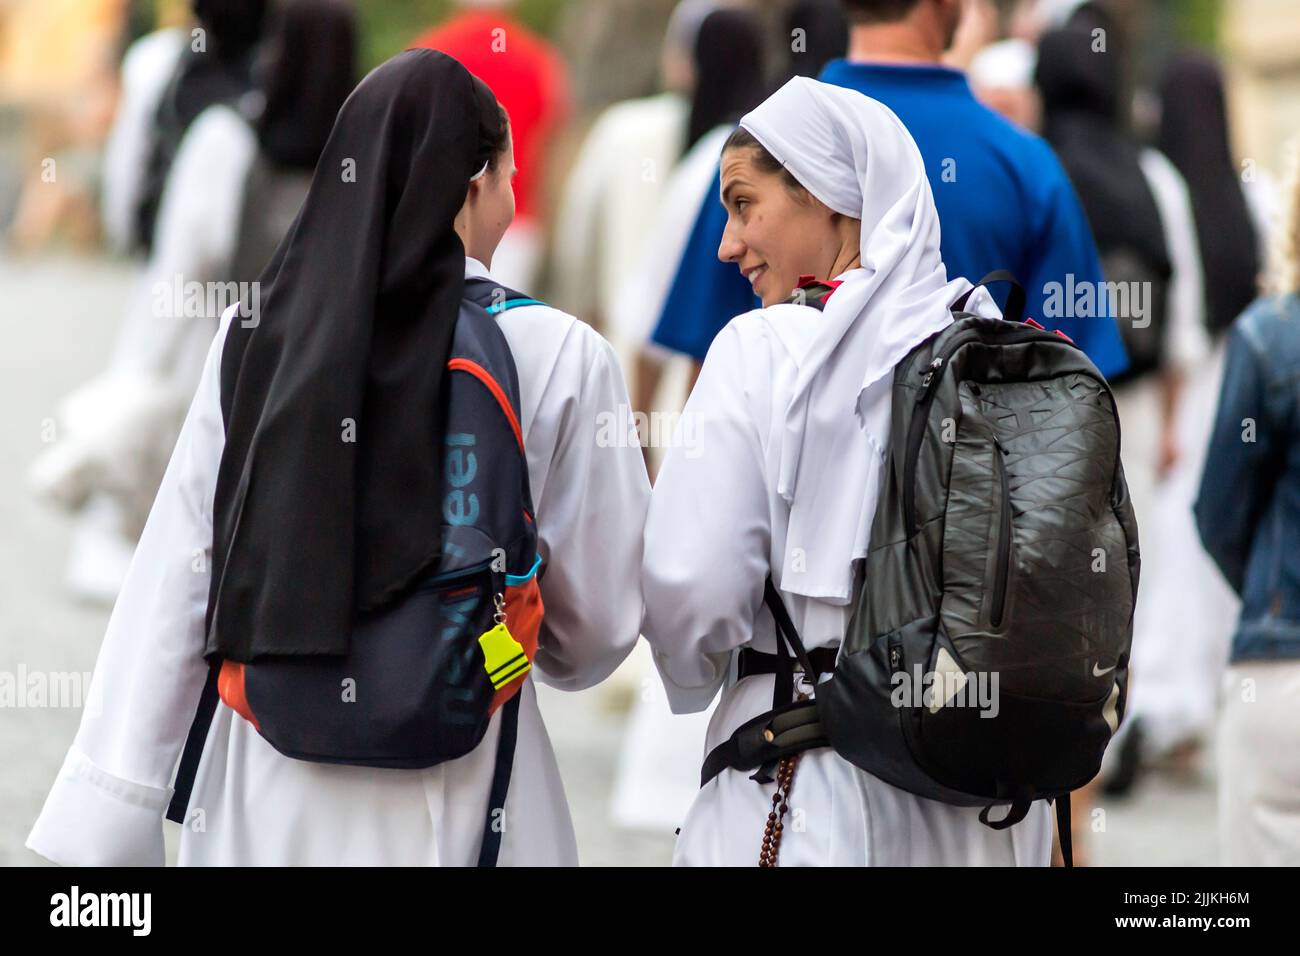 two white nuns walking on the street Stock Photo